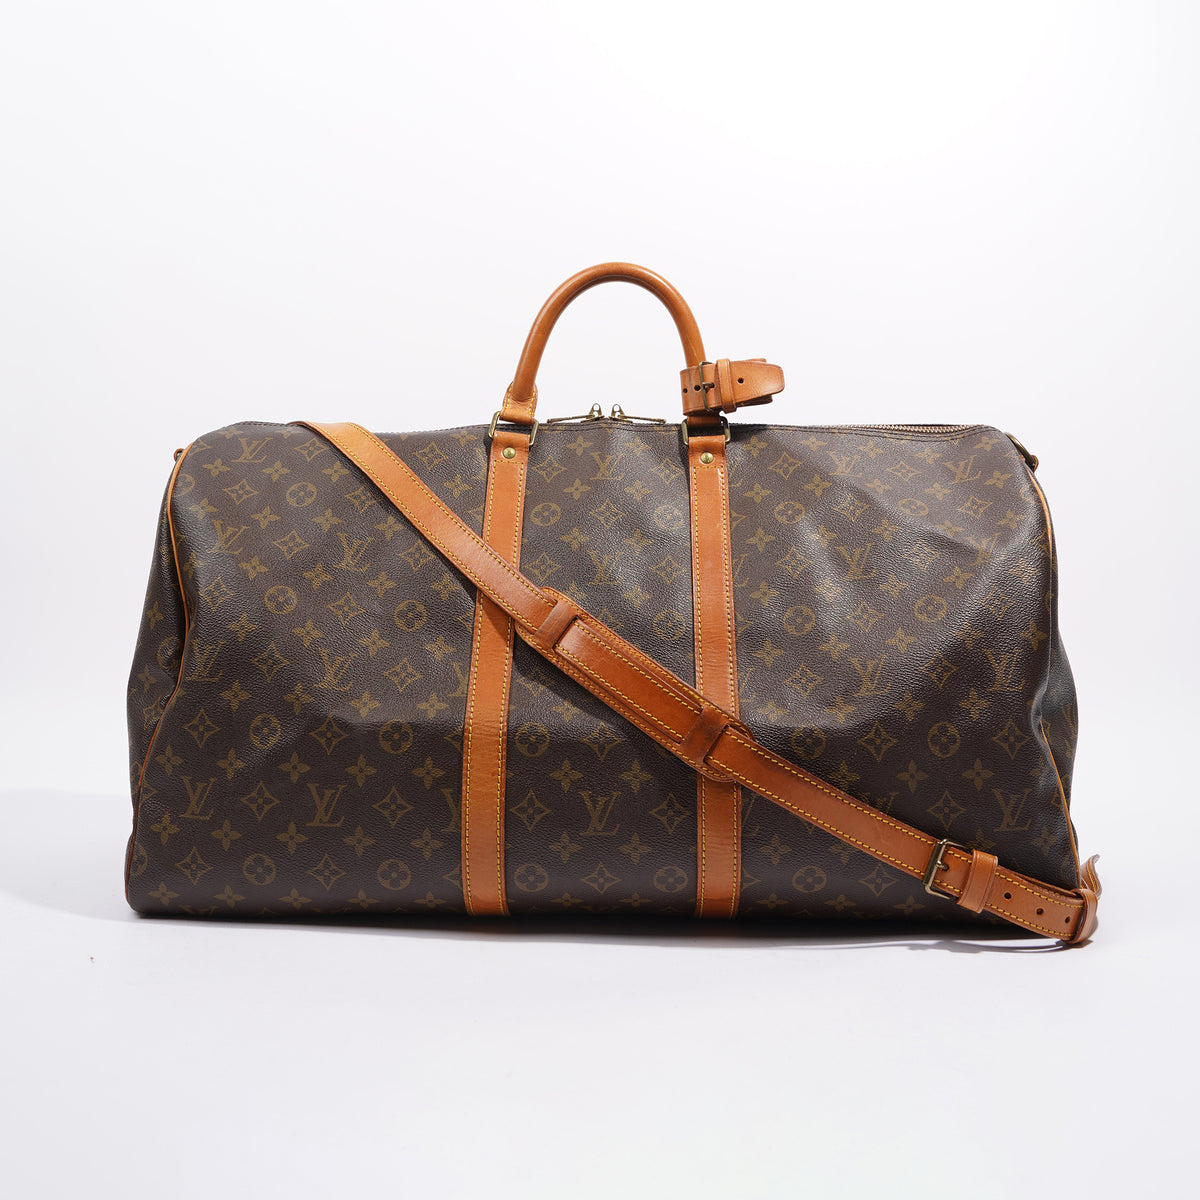 Vintage Louis Vuitton Sac Bandoliere Unsex Satchel/Crossbody Bag